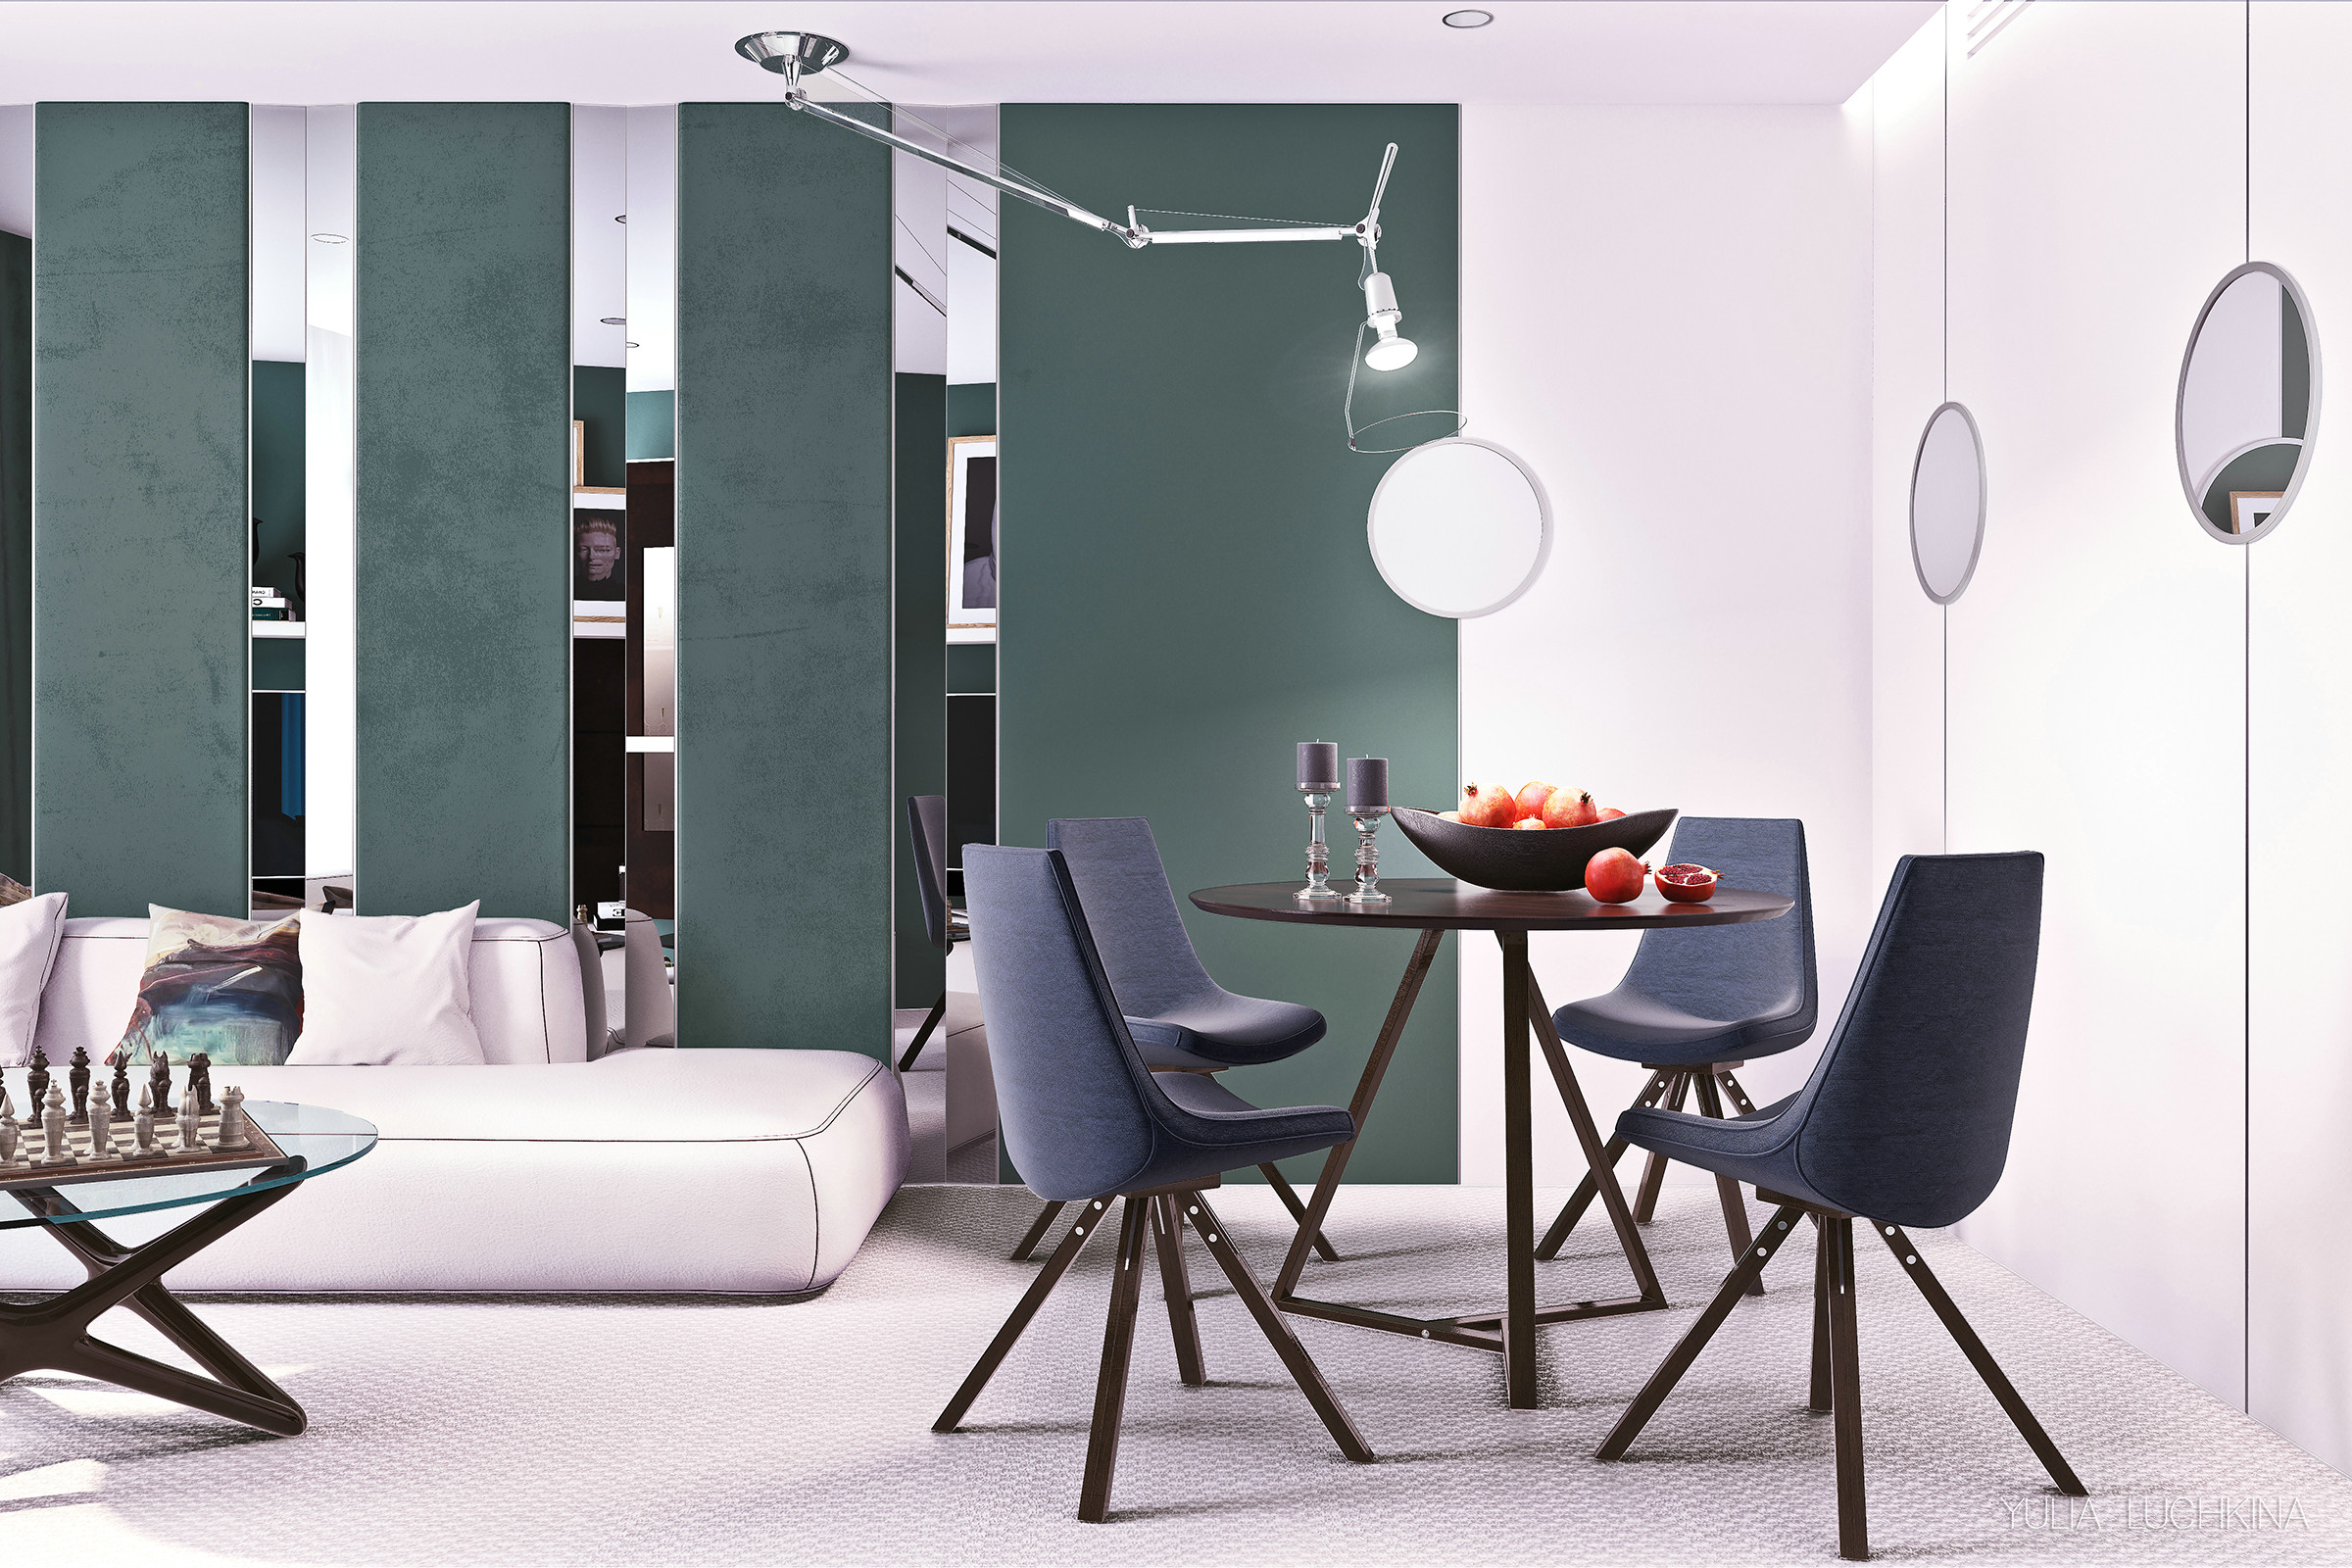 墨绿色空间中加入白色背景及紫色餐椅，丰富了空间的色彩，让餐厅变得更有精致感。